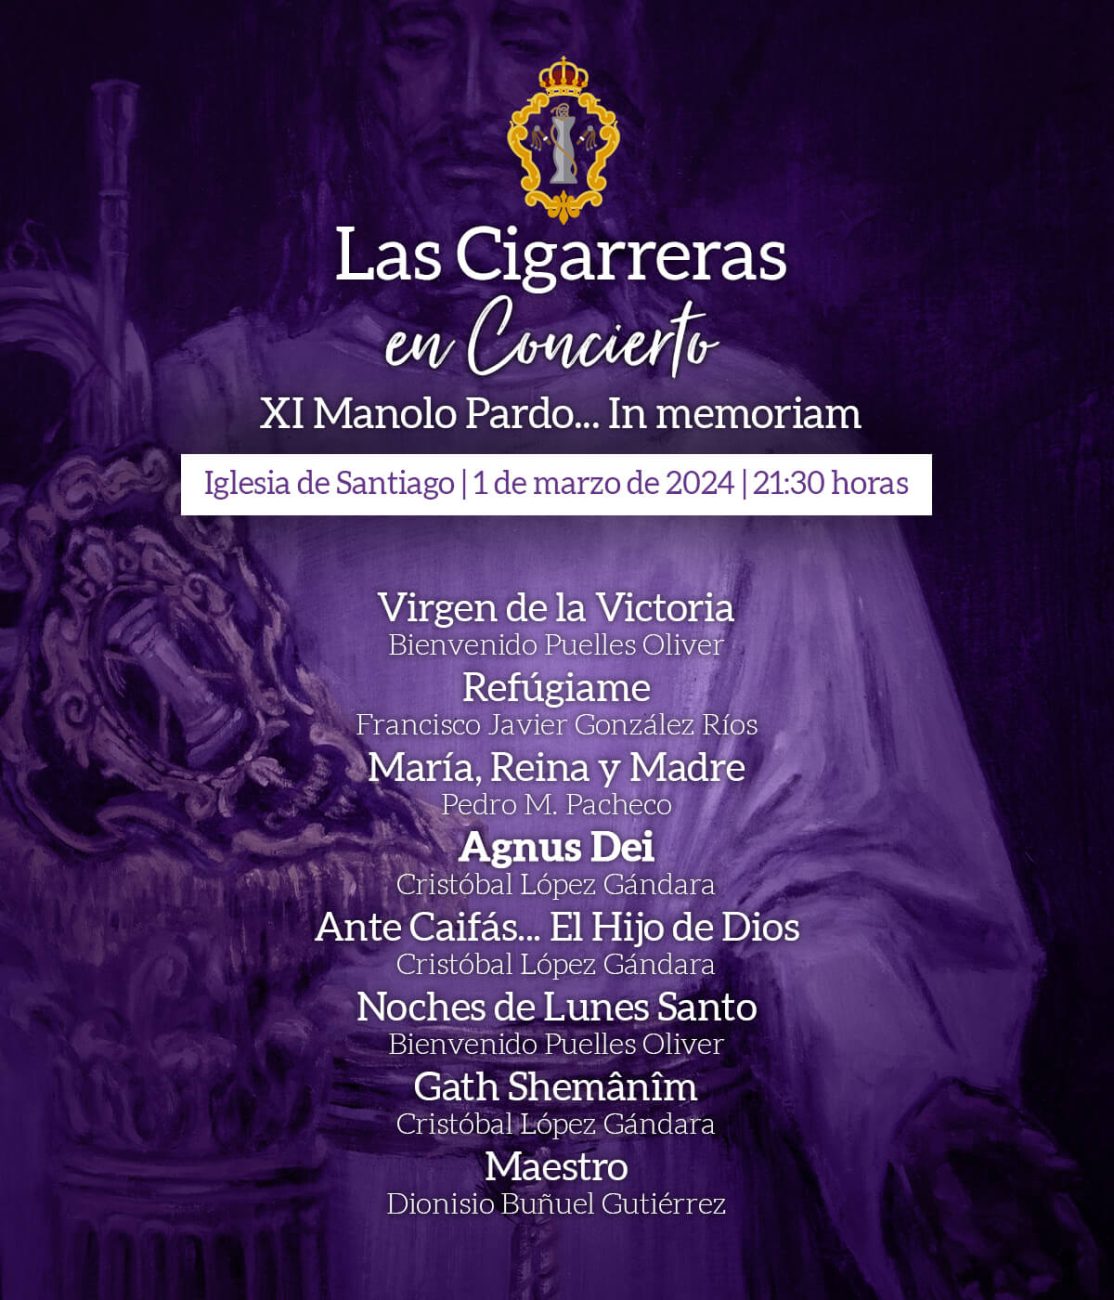 Programa del XI Concierto de Las Cigarreras: Manolo Pardo... In memoriam